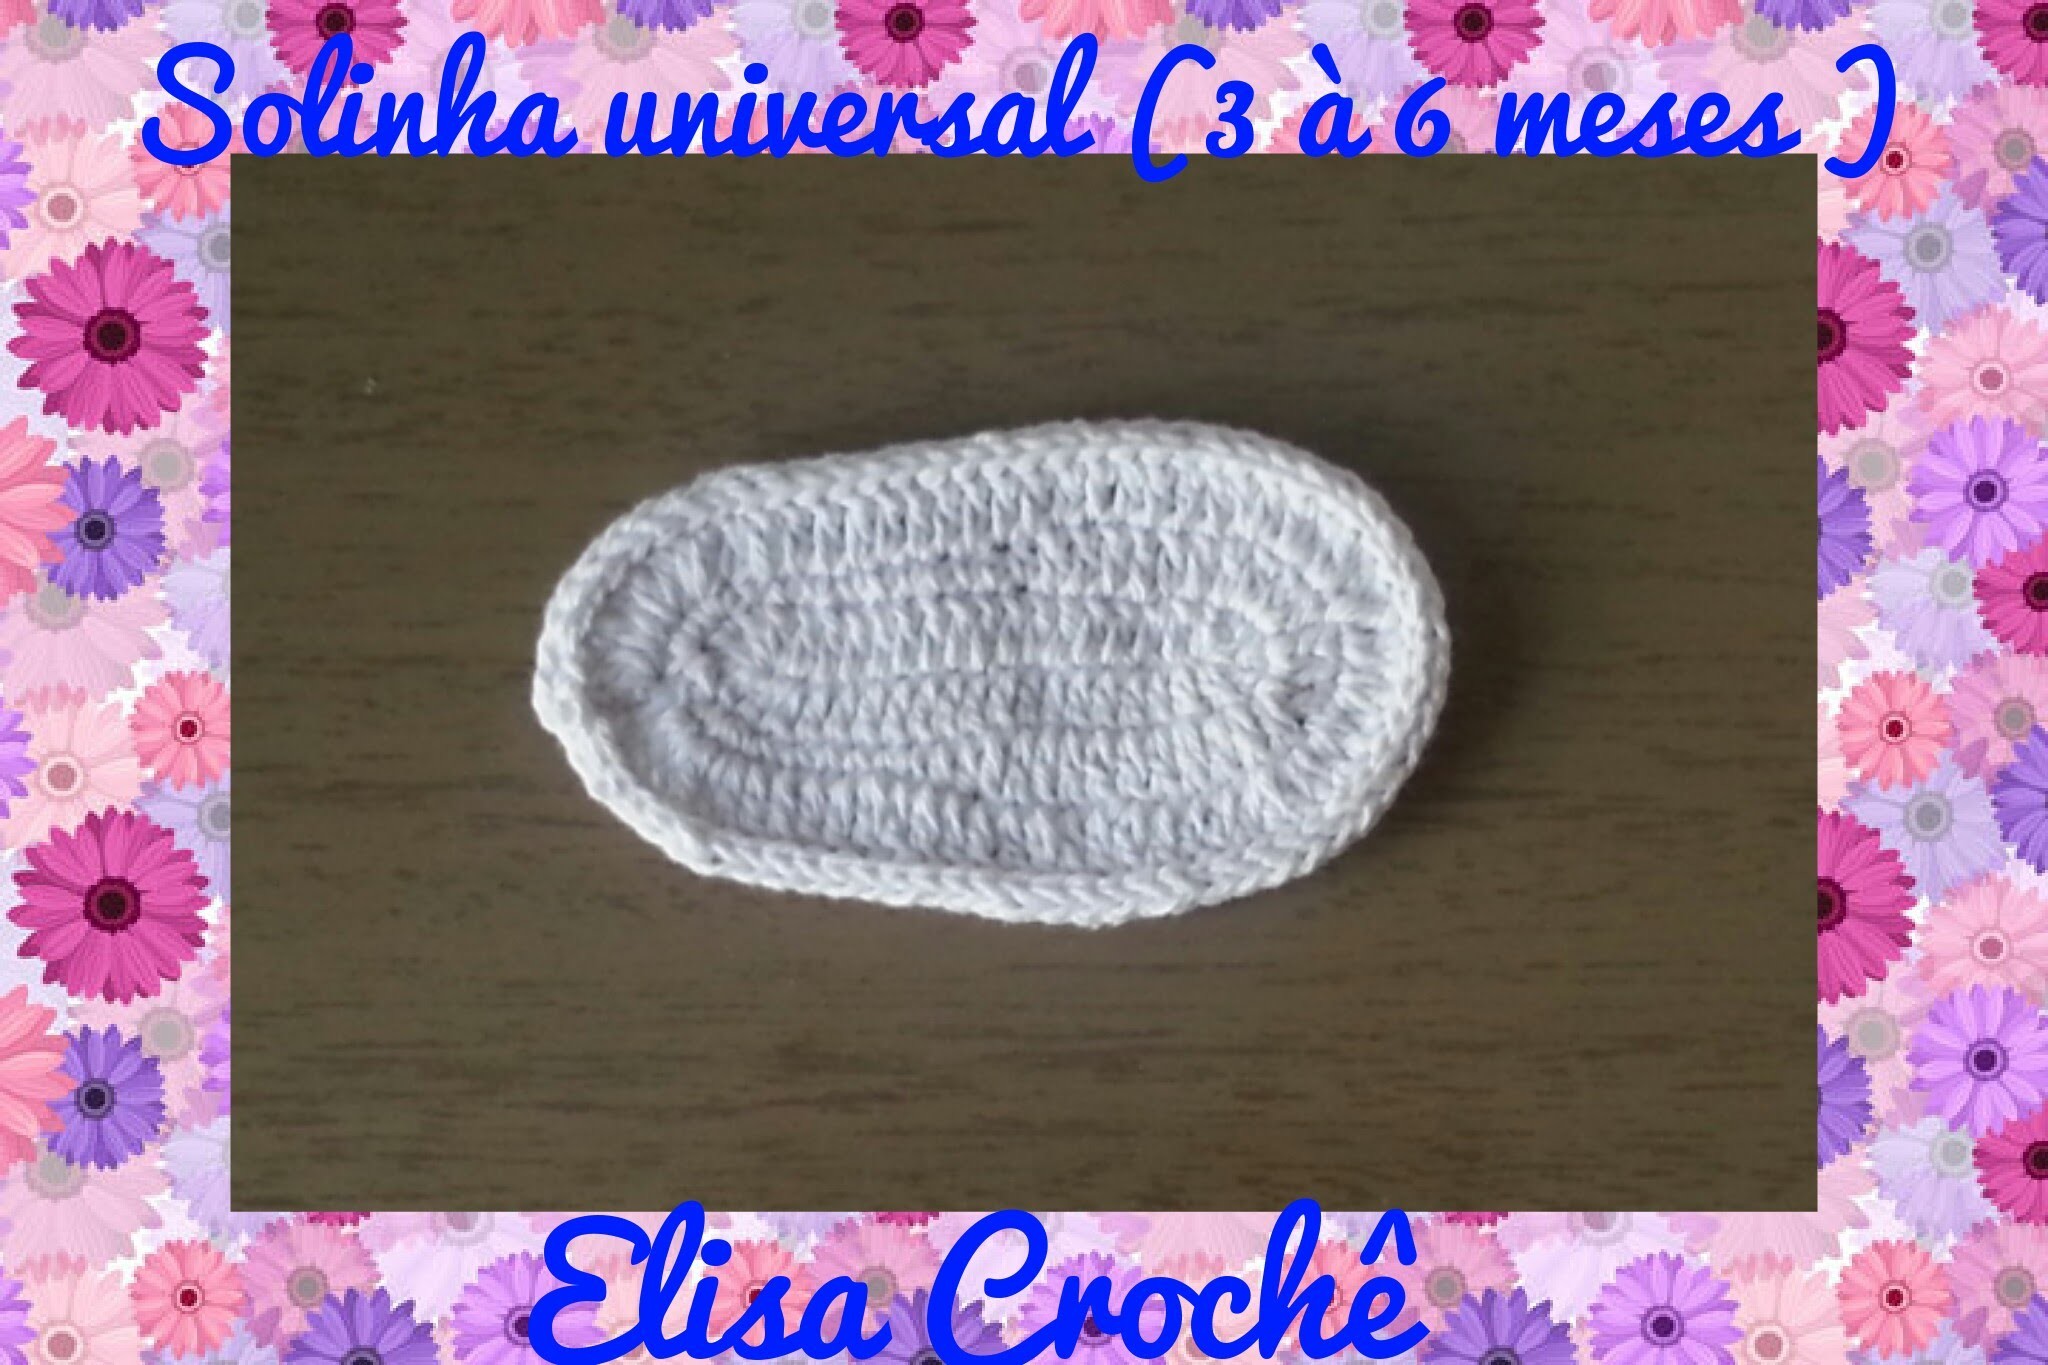 Solinha universal em crochê para sapatinhos ( 3 à 6 meses ) # Elisa Crochê